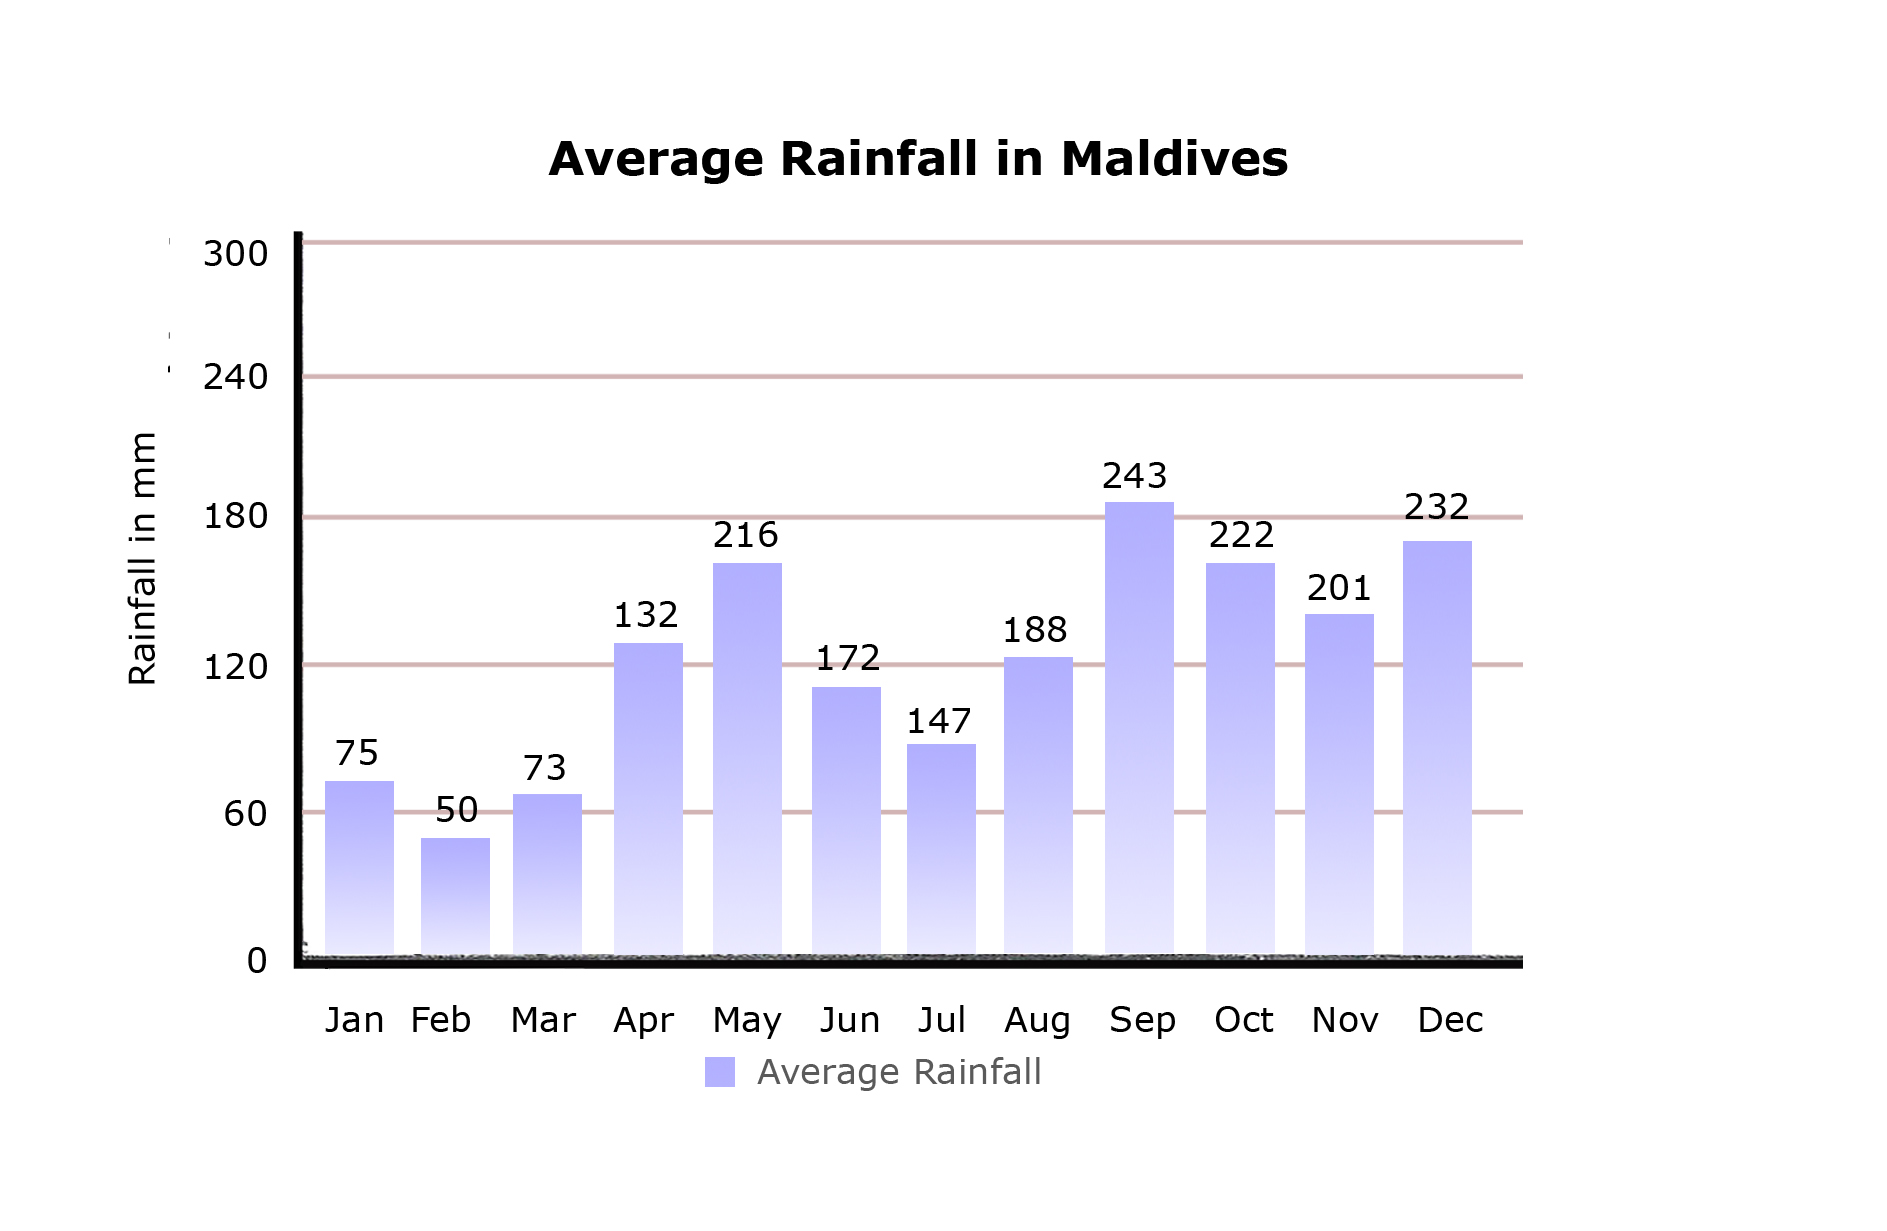 Maldives Weather Chart